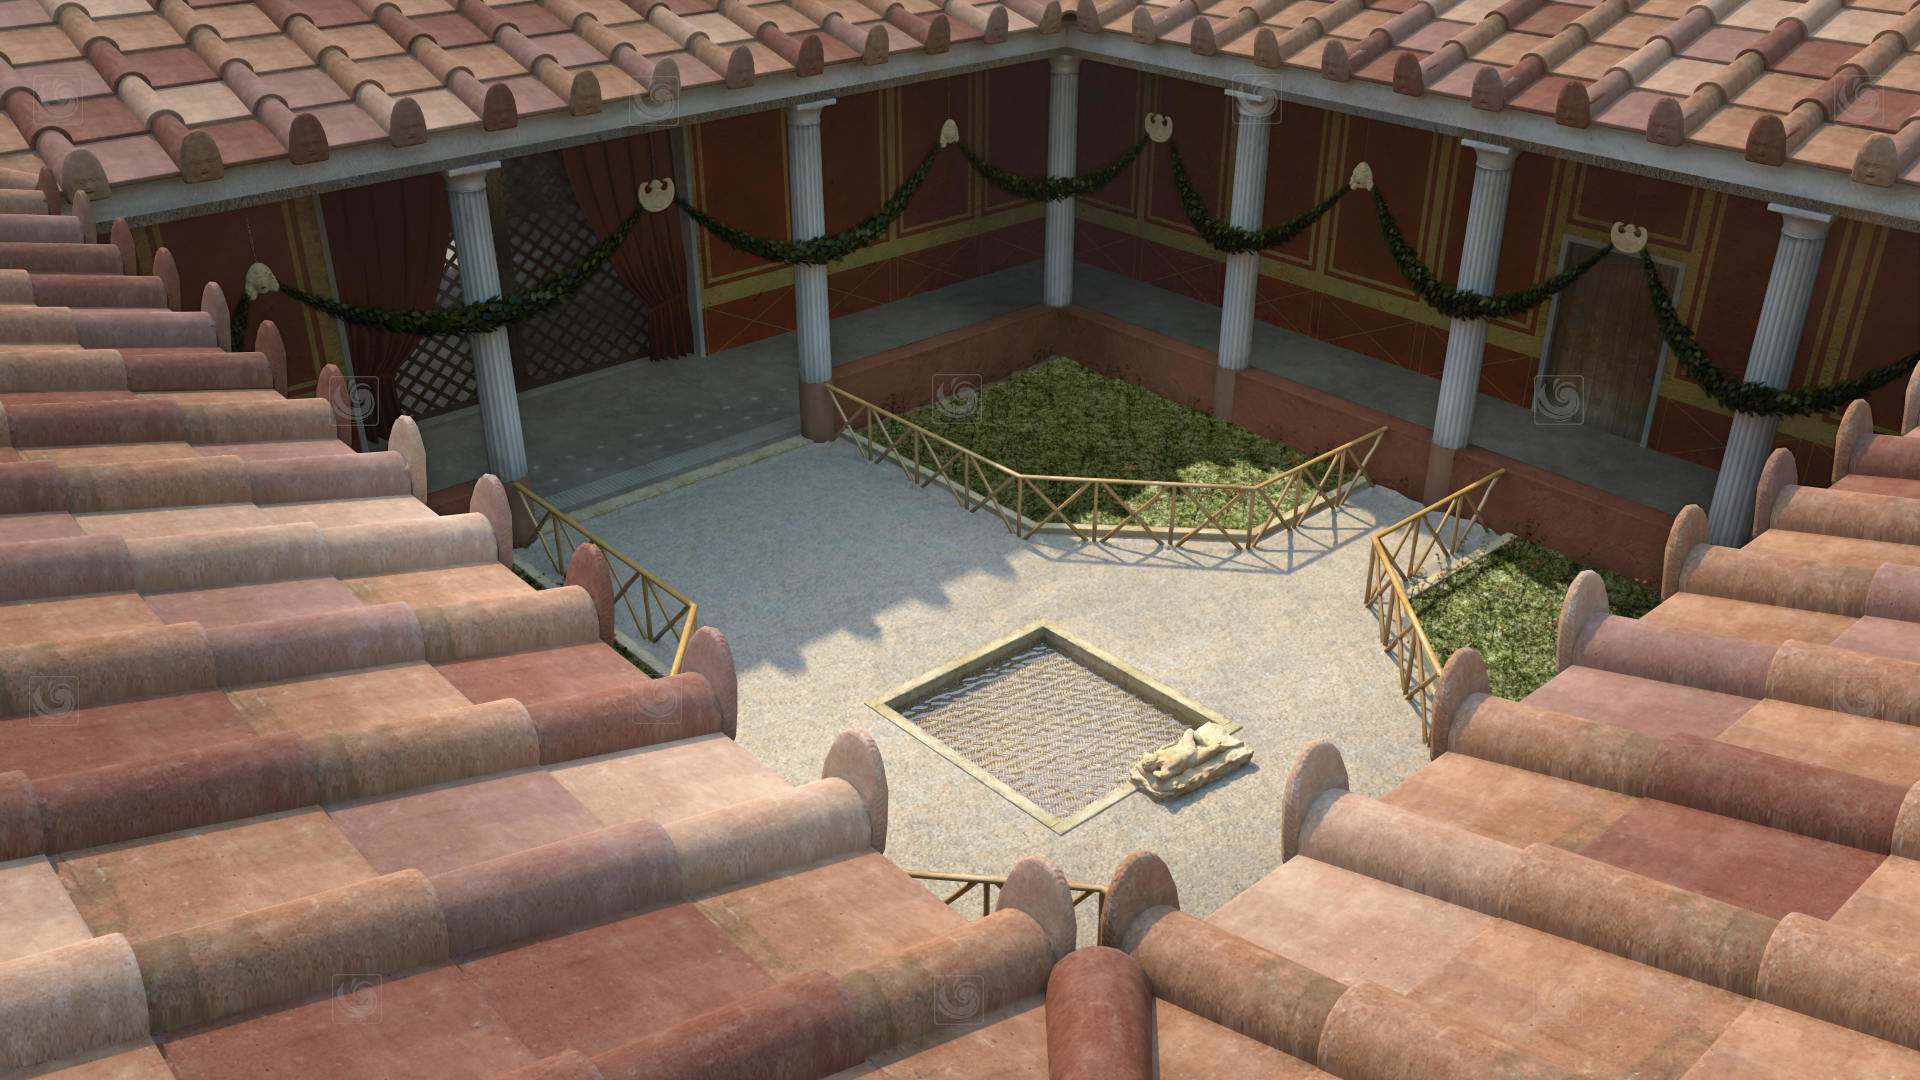 Fotograma de animación 3D mostrando una vista general de un patio romano